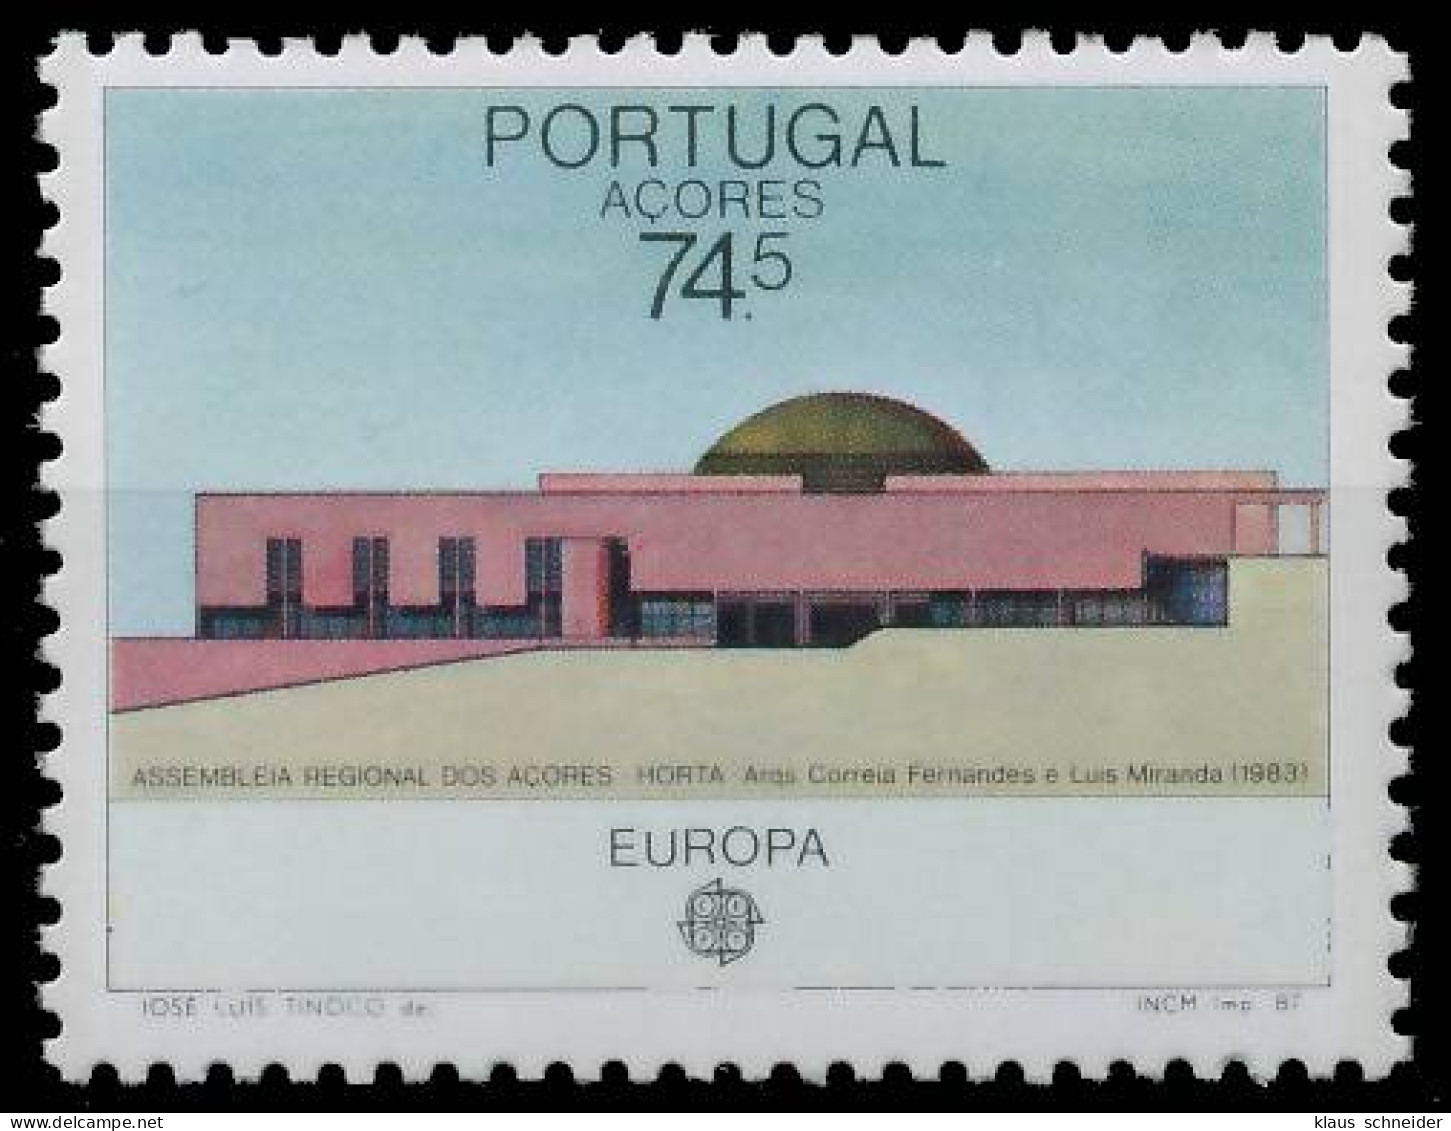 AZOREN 1980-1989 Nr 383 Postfrisch S1F60D2 - Açores